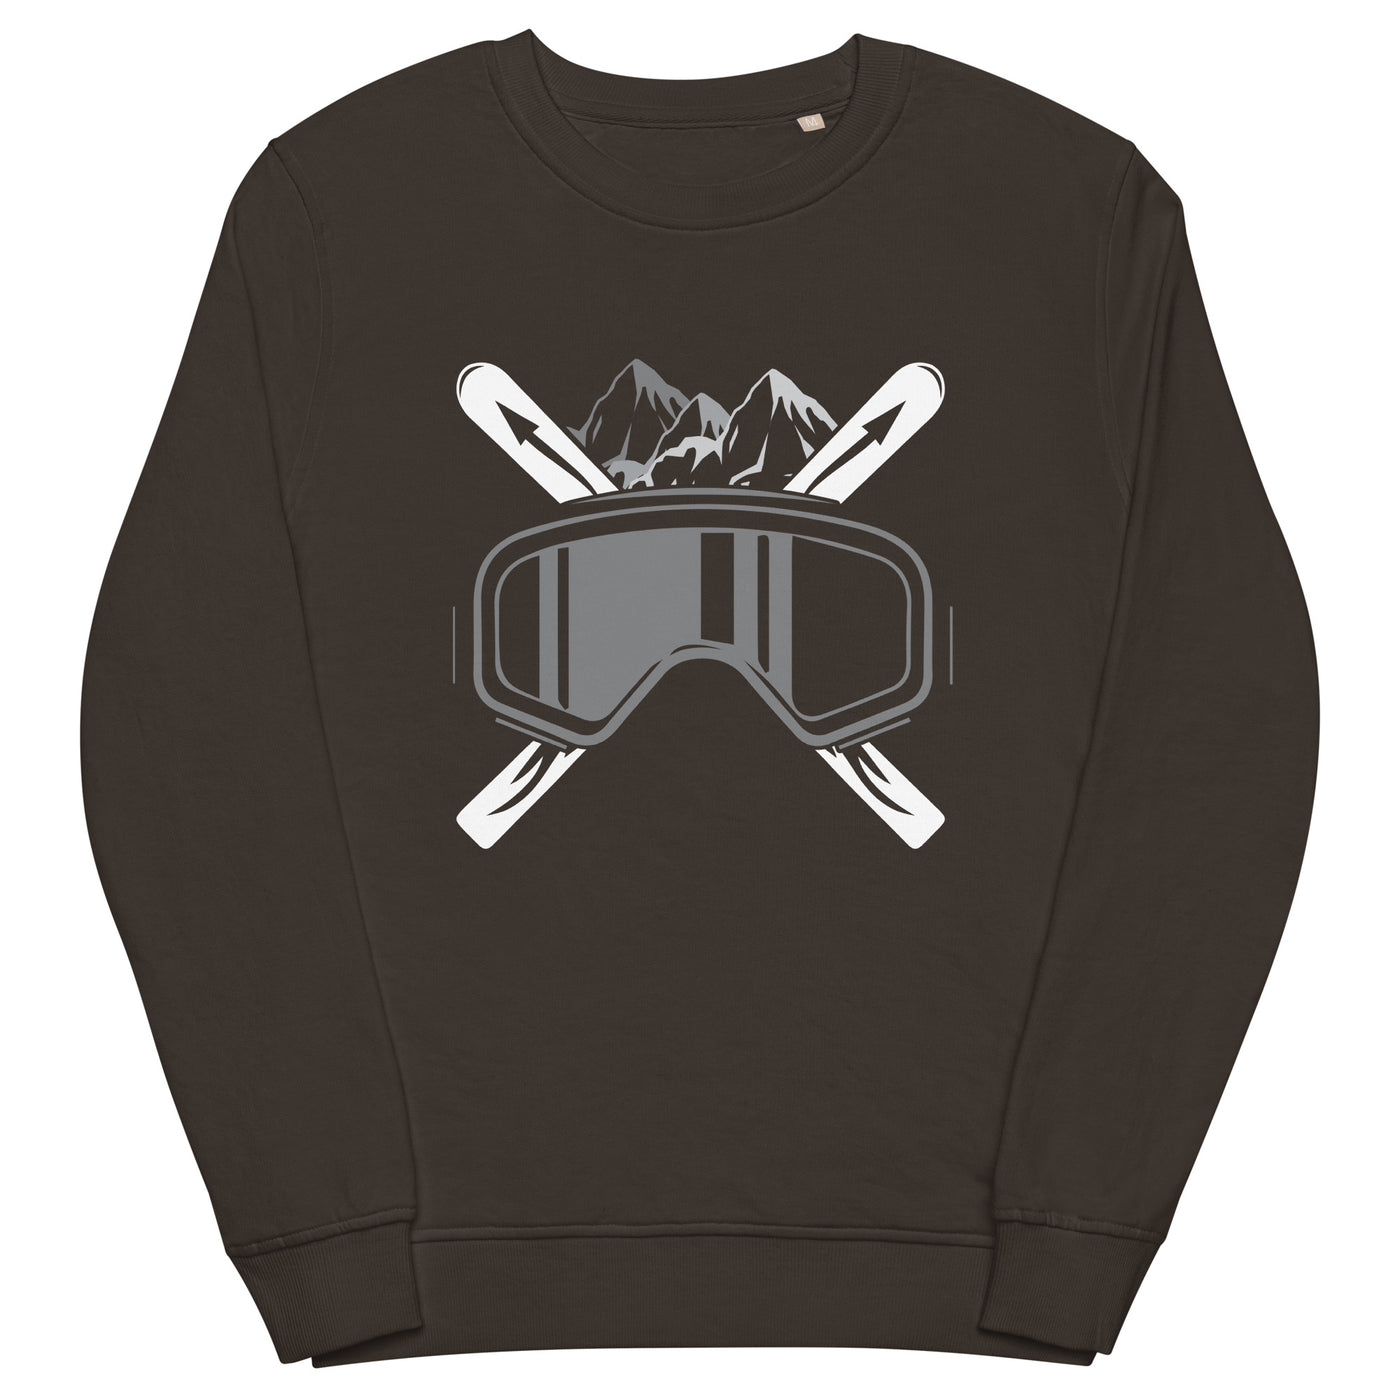 Schifoan - Unisex Premium Organic Sweatshirt klettern ski xxx yyy zzz Deep Charcoal Grey